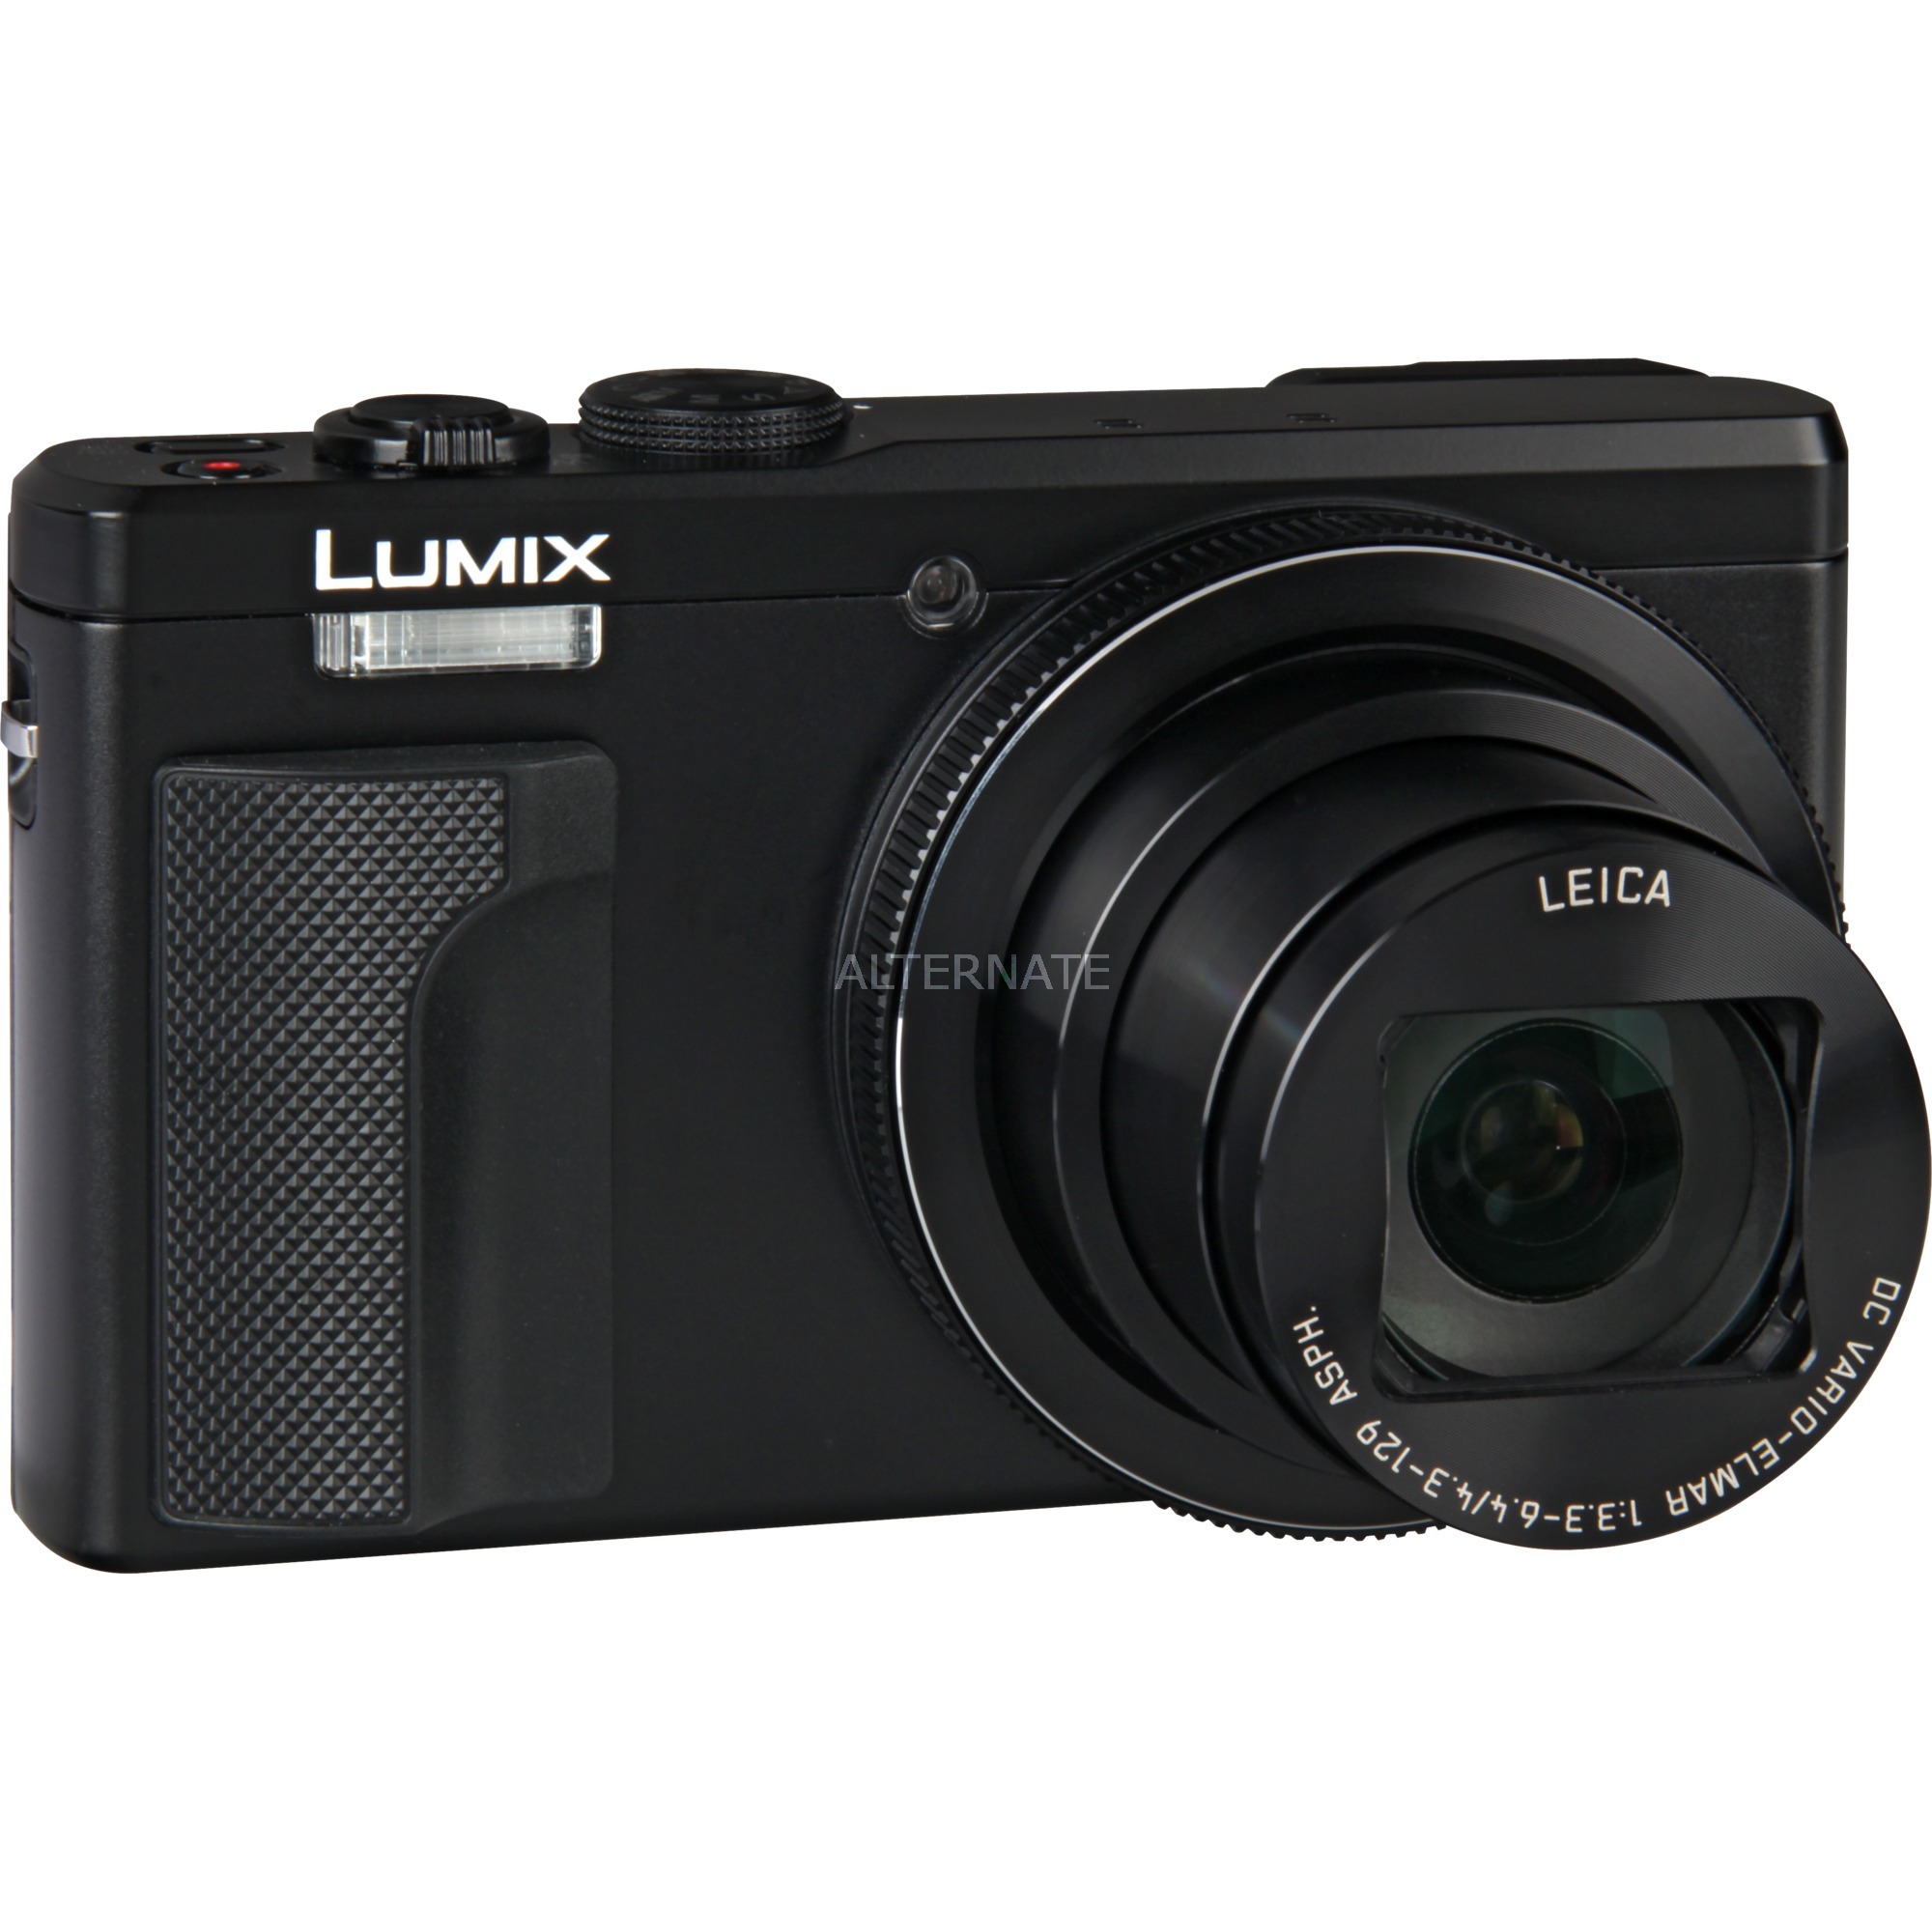 Lumix DMC-TZ80 Kompaktowy aparat fotograficzny 18,1 MP 1/2.3" MOS 4896 x 3672 piksele Czarny, Cyfrowy aparat fotograficzny